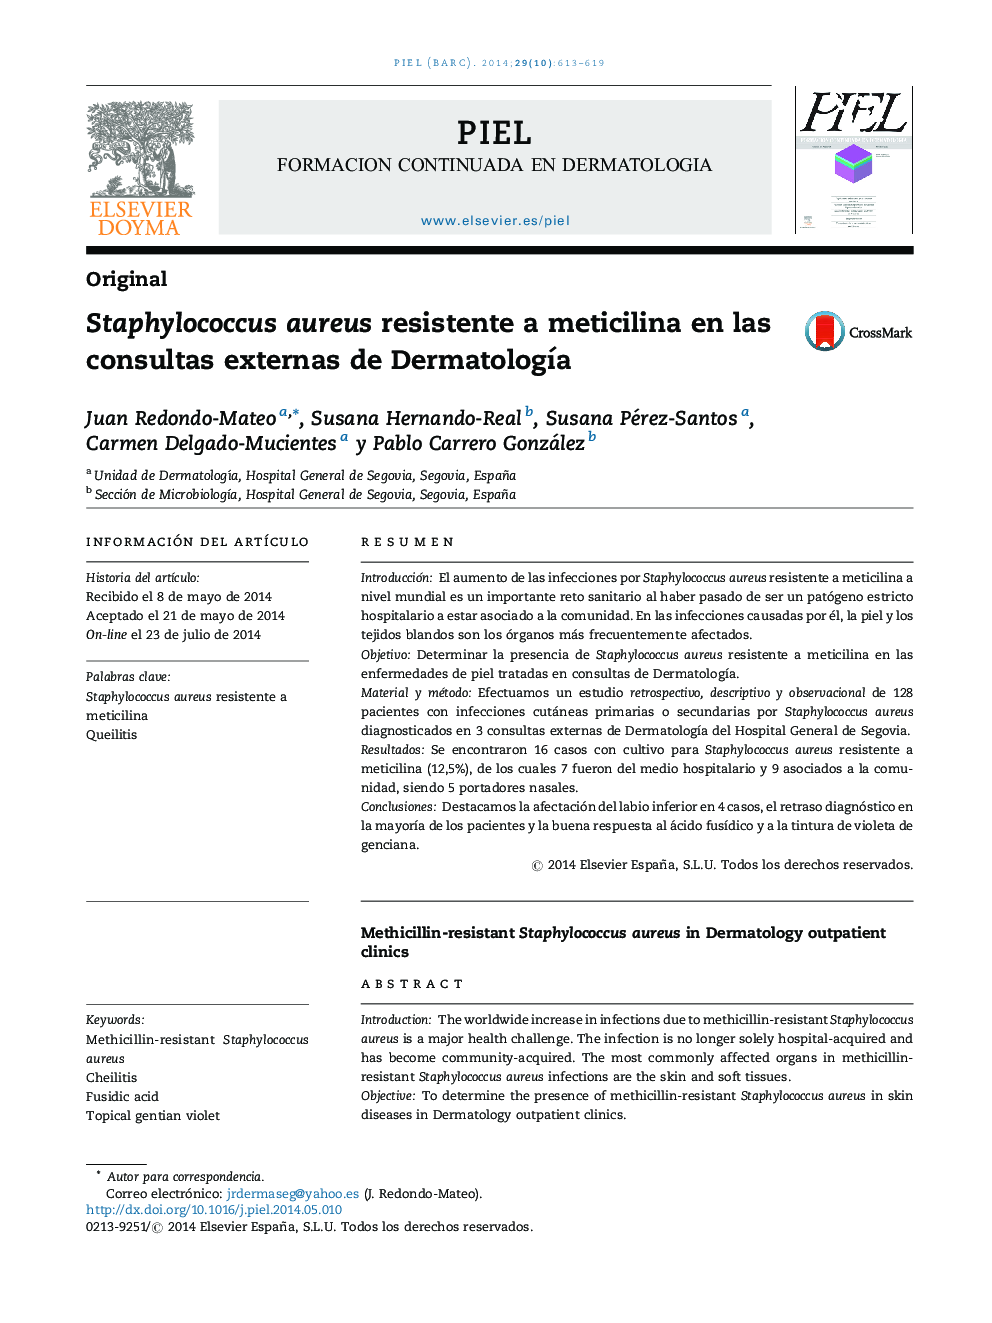 Staphylococcus aureus resistente a meticilina en las consultas externas de Dermatología